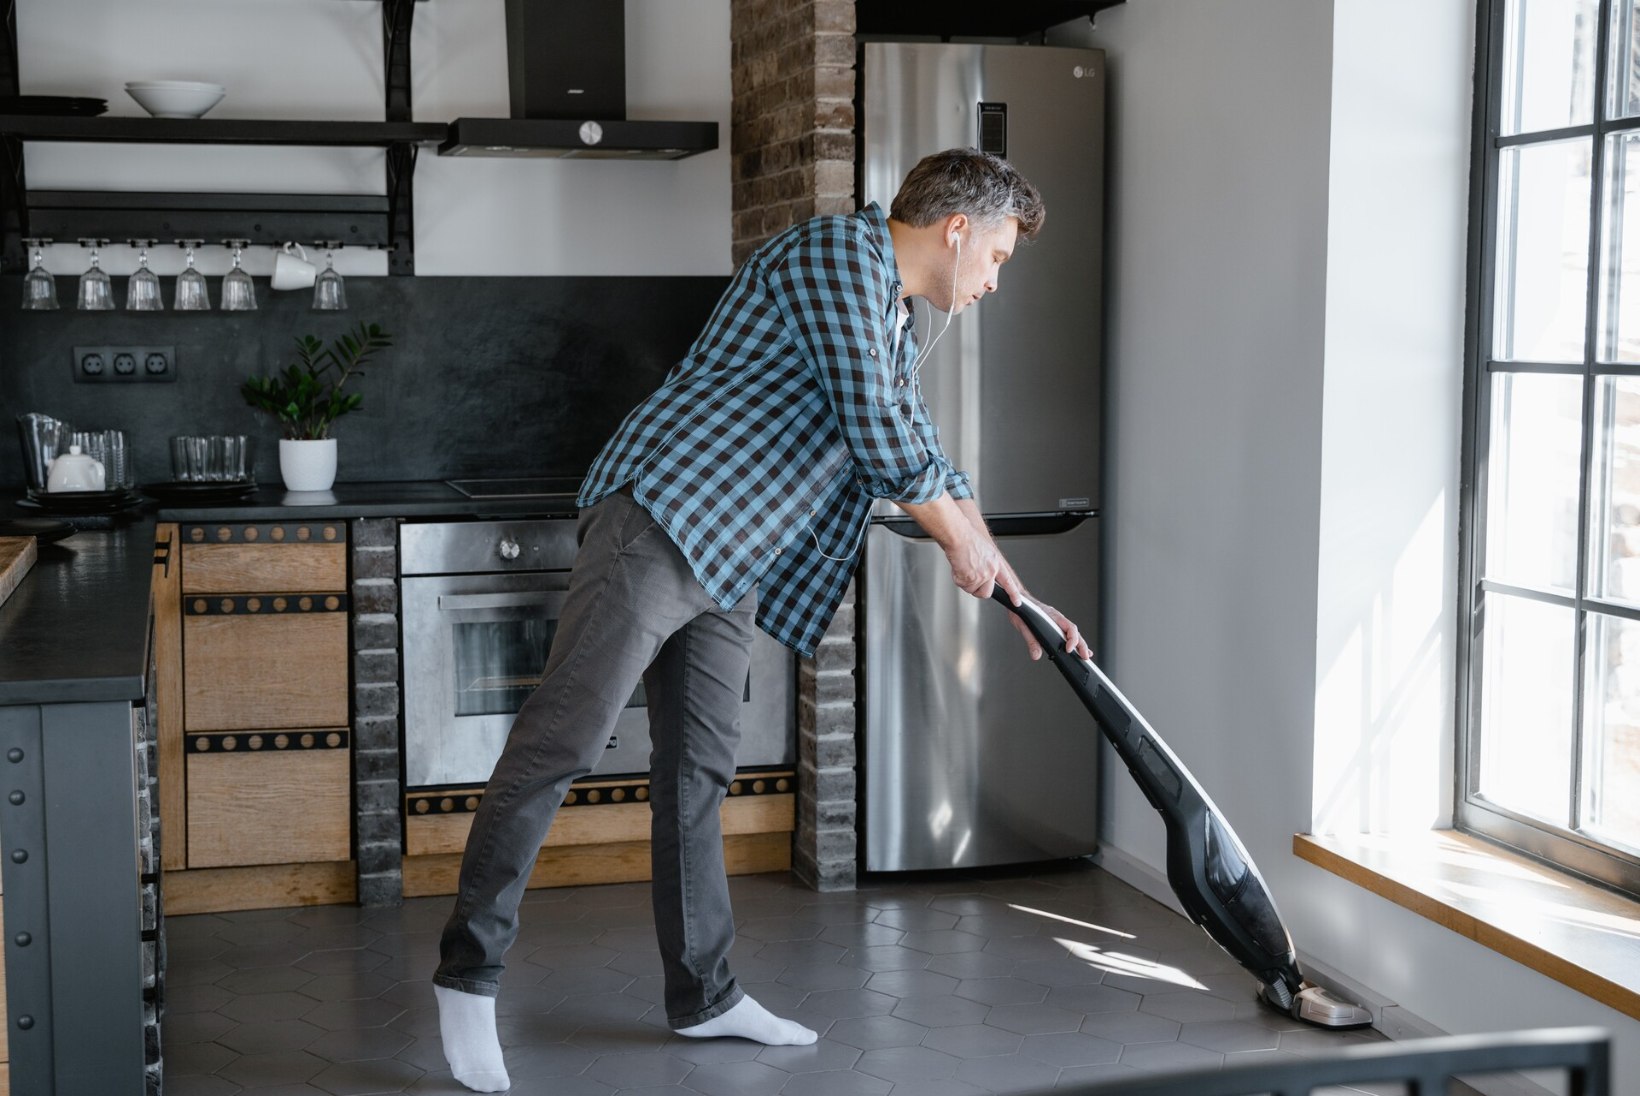 Uued meetodid: kuidas hoida põrandad puhtana kemikaale kasutamata?